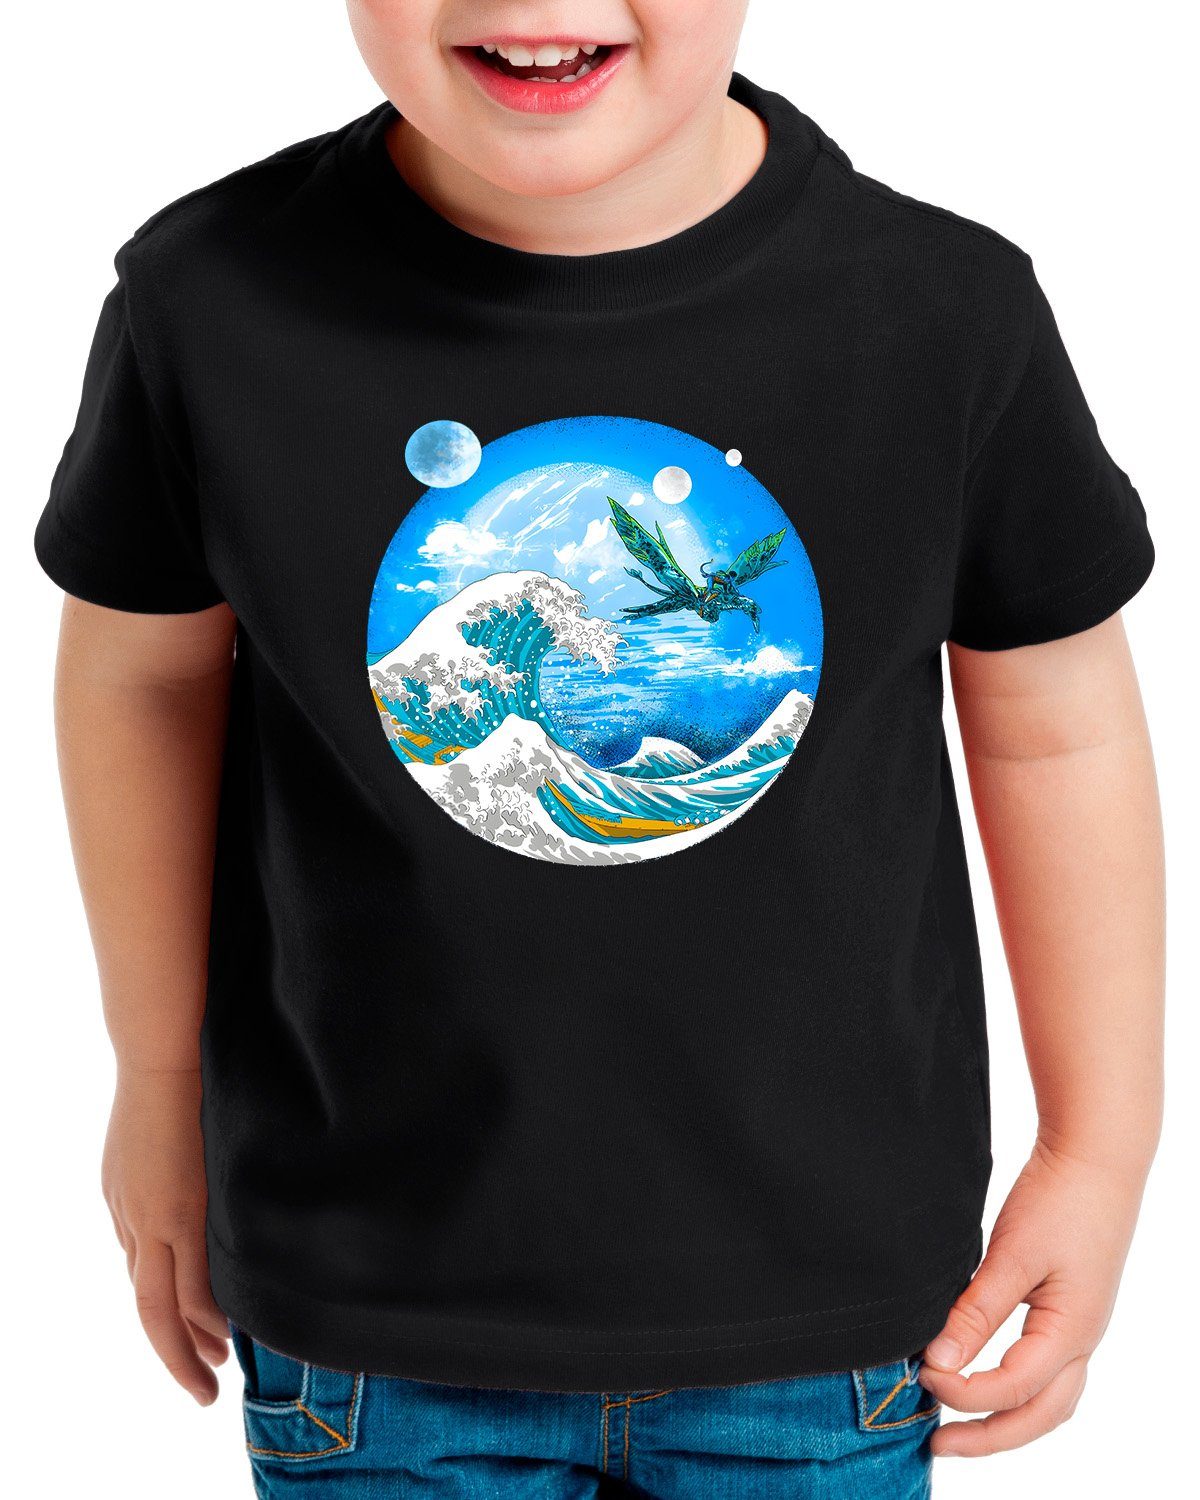 Print-Shirt Kinder pandora avatar Banshee navi T-Shirt sully Wave style3 jake